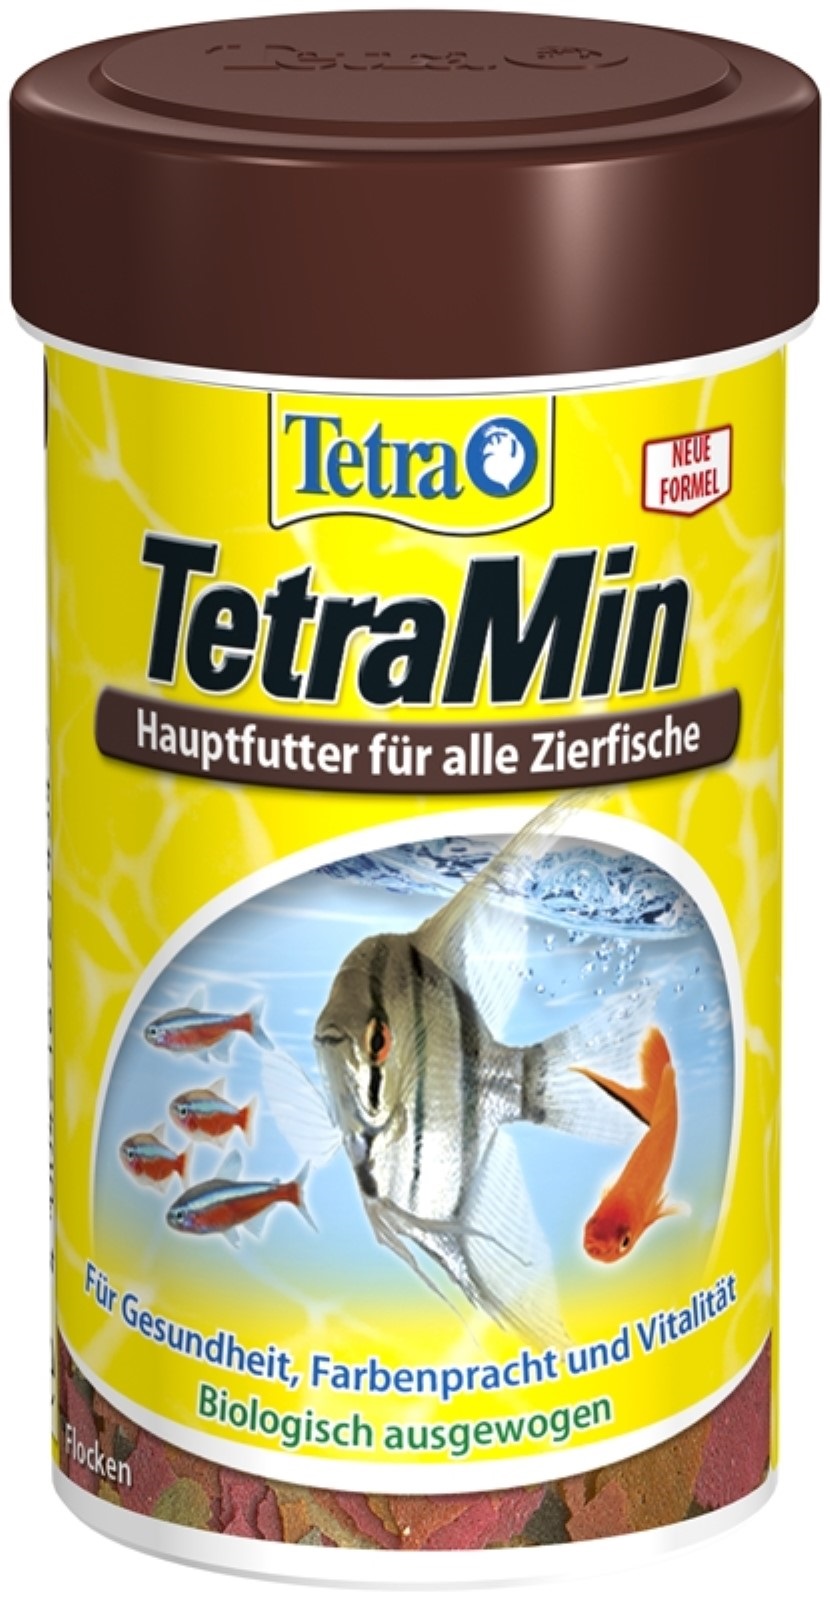 Tetra Min 100 ml Hauptfutter für alle Zierfische in Flockenform